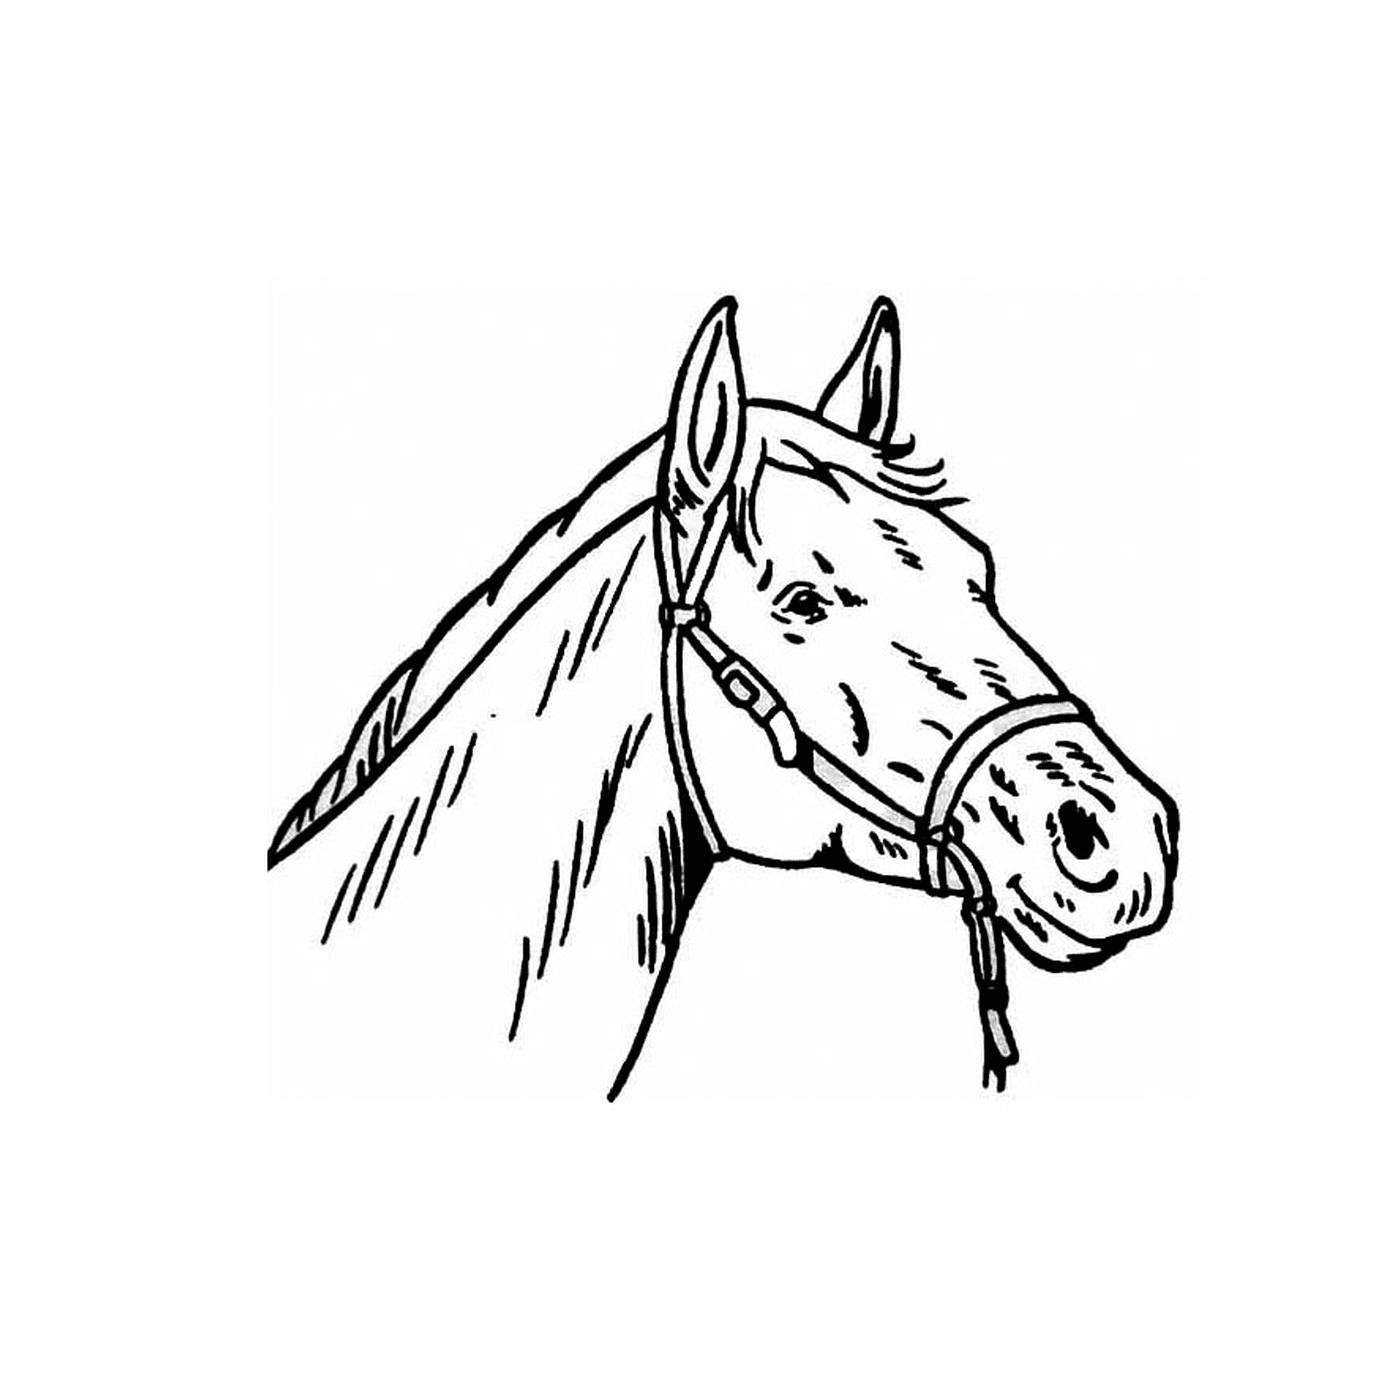  Un suggestivo ritratto della testa di un cavallo 